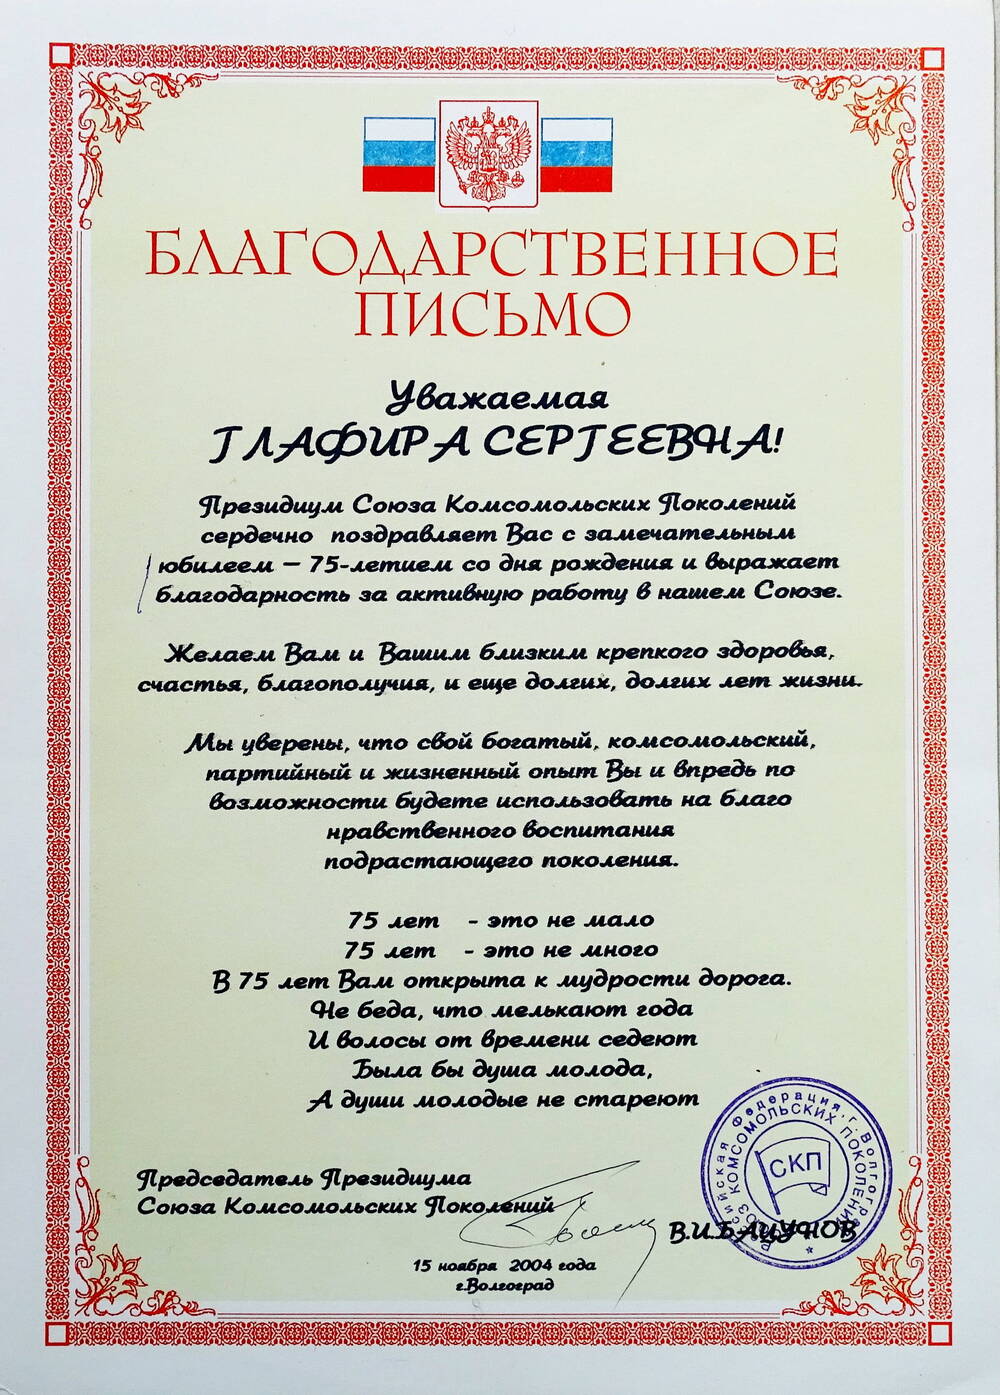 Благодарственное письмо от Президиума Союза Комсомольских Поколений Шулеповой Г.С. с замечательным юбилеем - 75-летием со дня рождения.